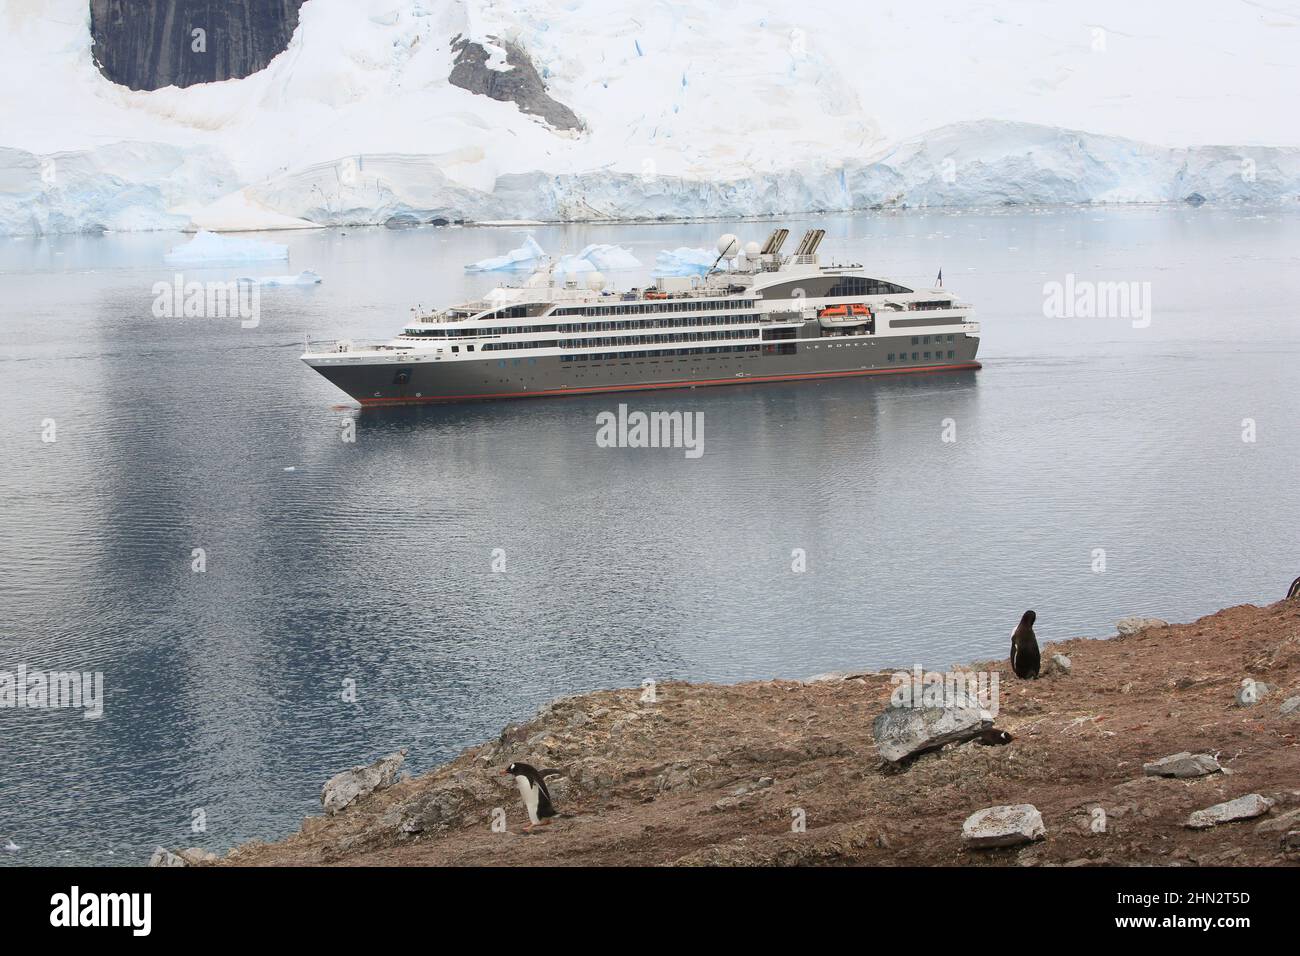 Pingouins Gentoo sur l'île Danco avec navire de croisière le Boreal dans le passage entre l'île Danco et l'île Range, Antarctique. Banque D'Images